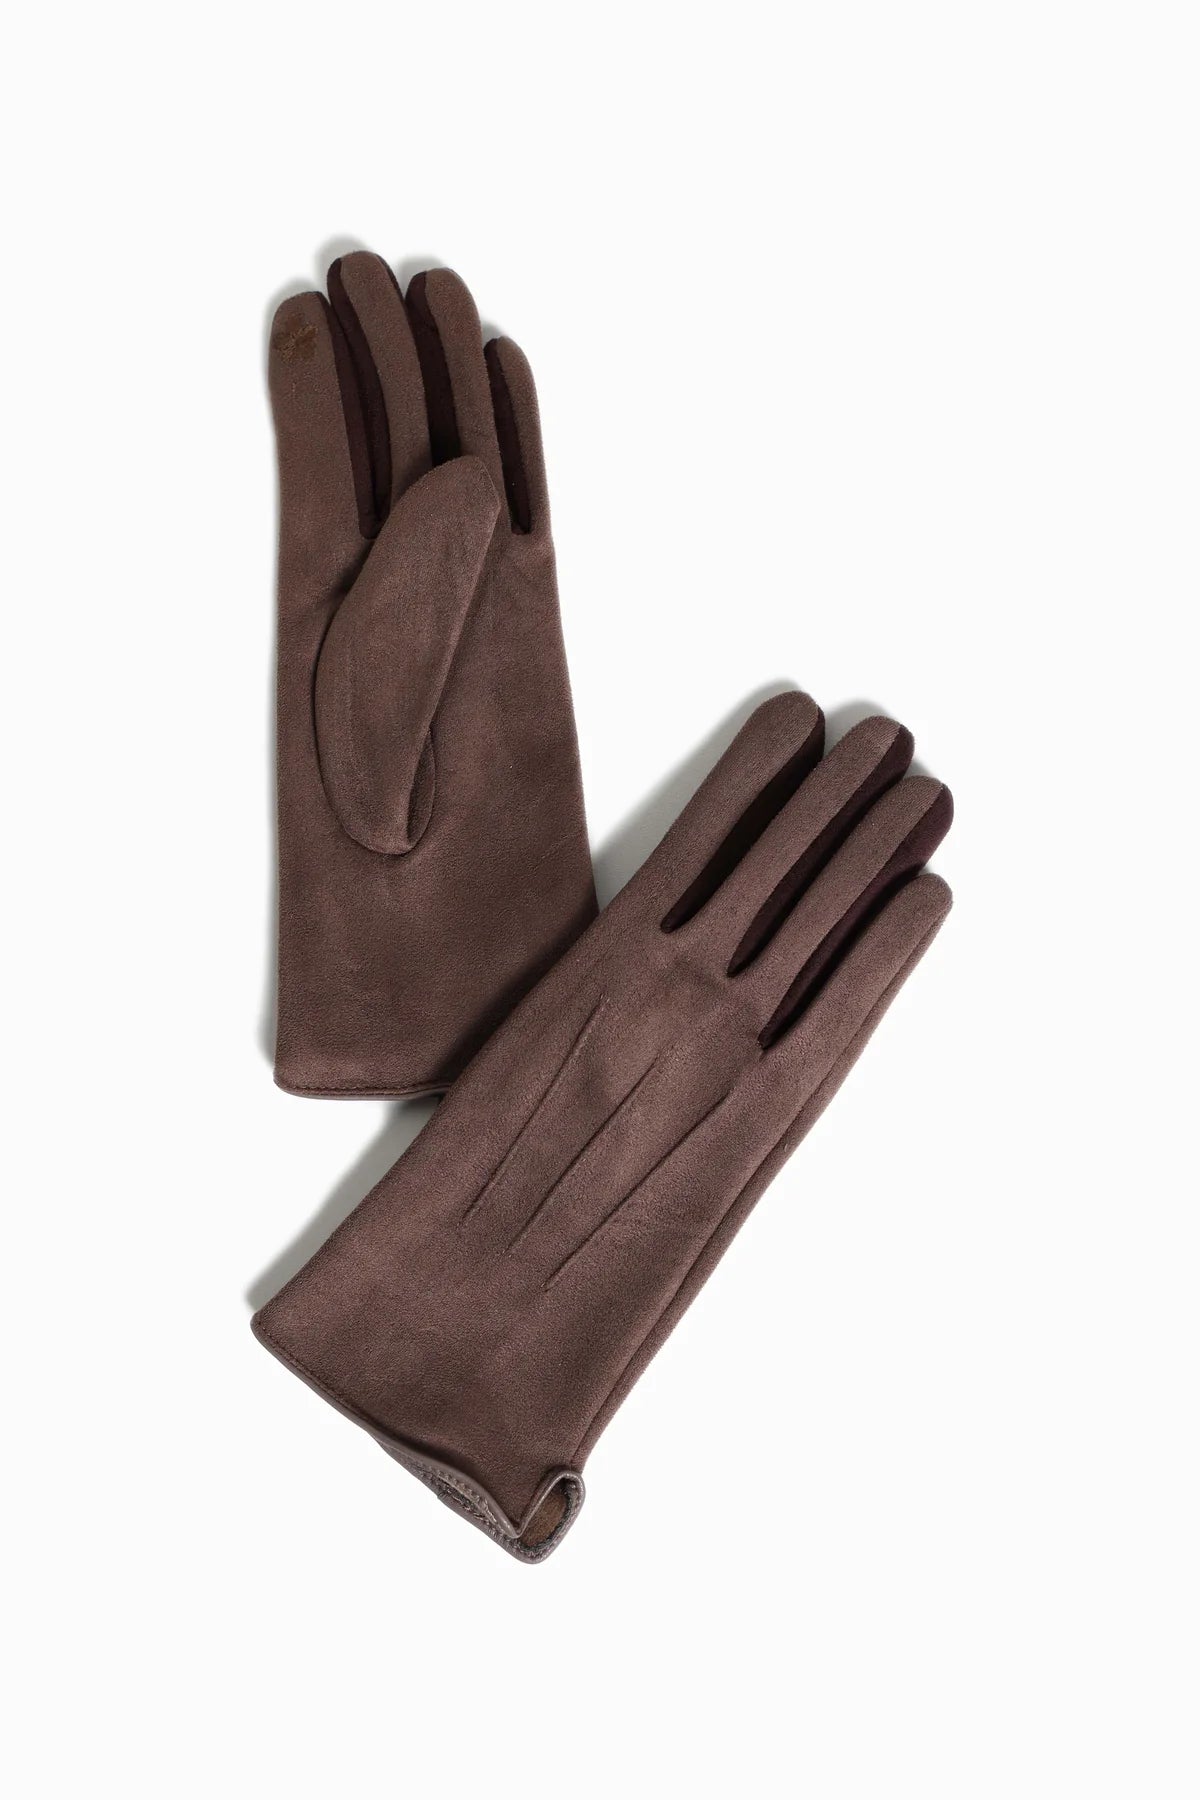 Finger-Color Detail Suede Gloves | Camel